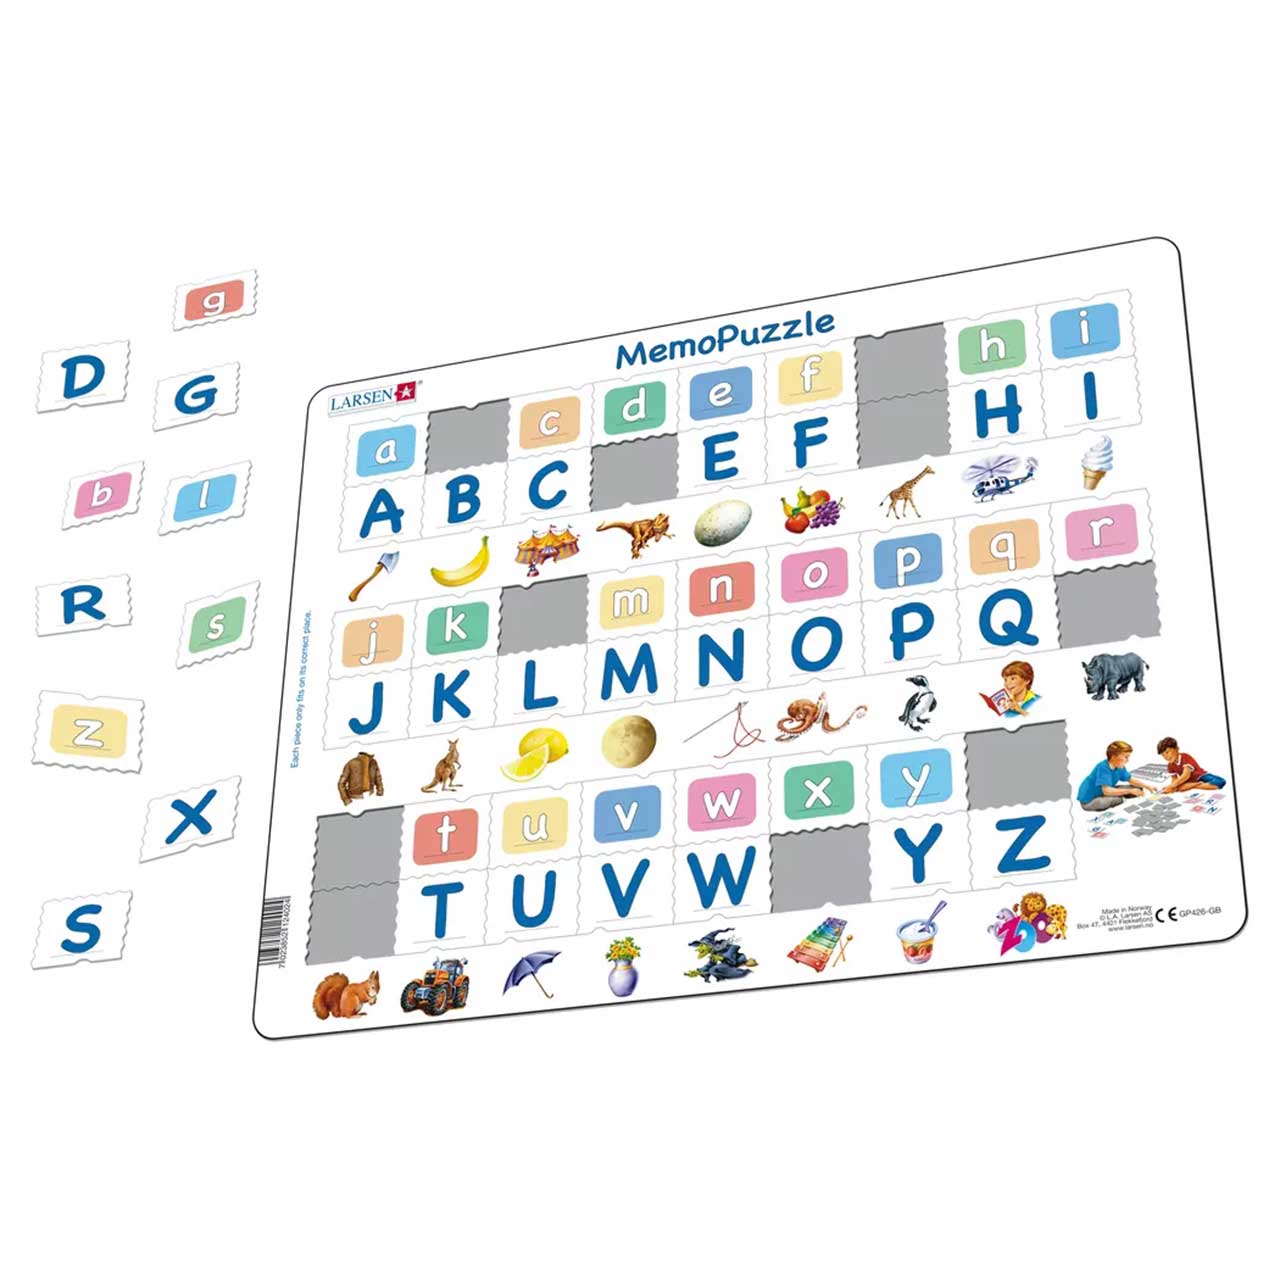 Kinderpuzzle ab 2 jahre Zahlen Buchstaben Tiere Fahrzeuge Pferde Alphabet Puzzle 